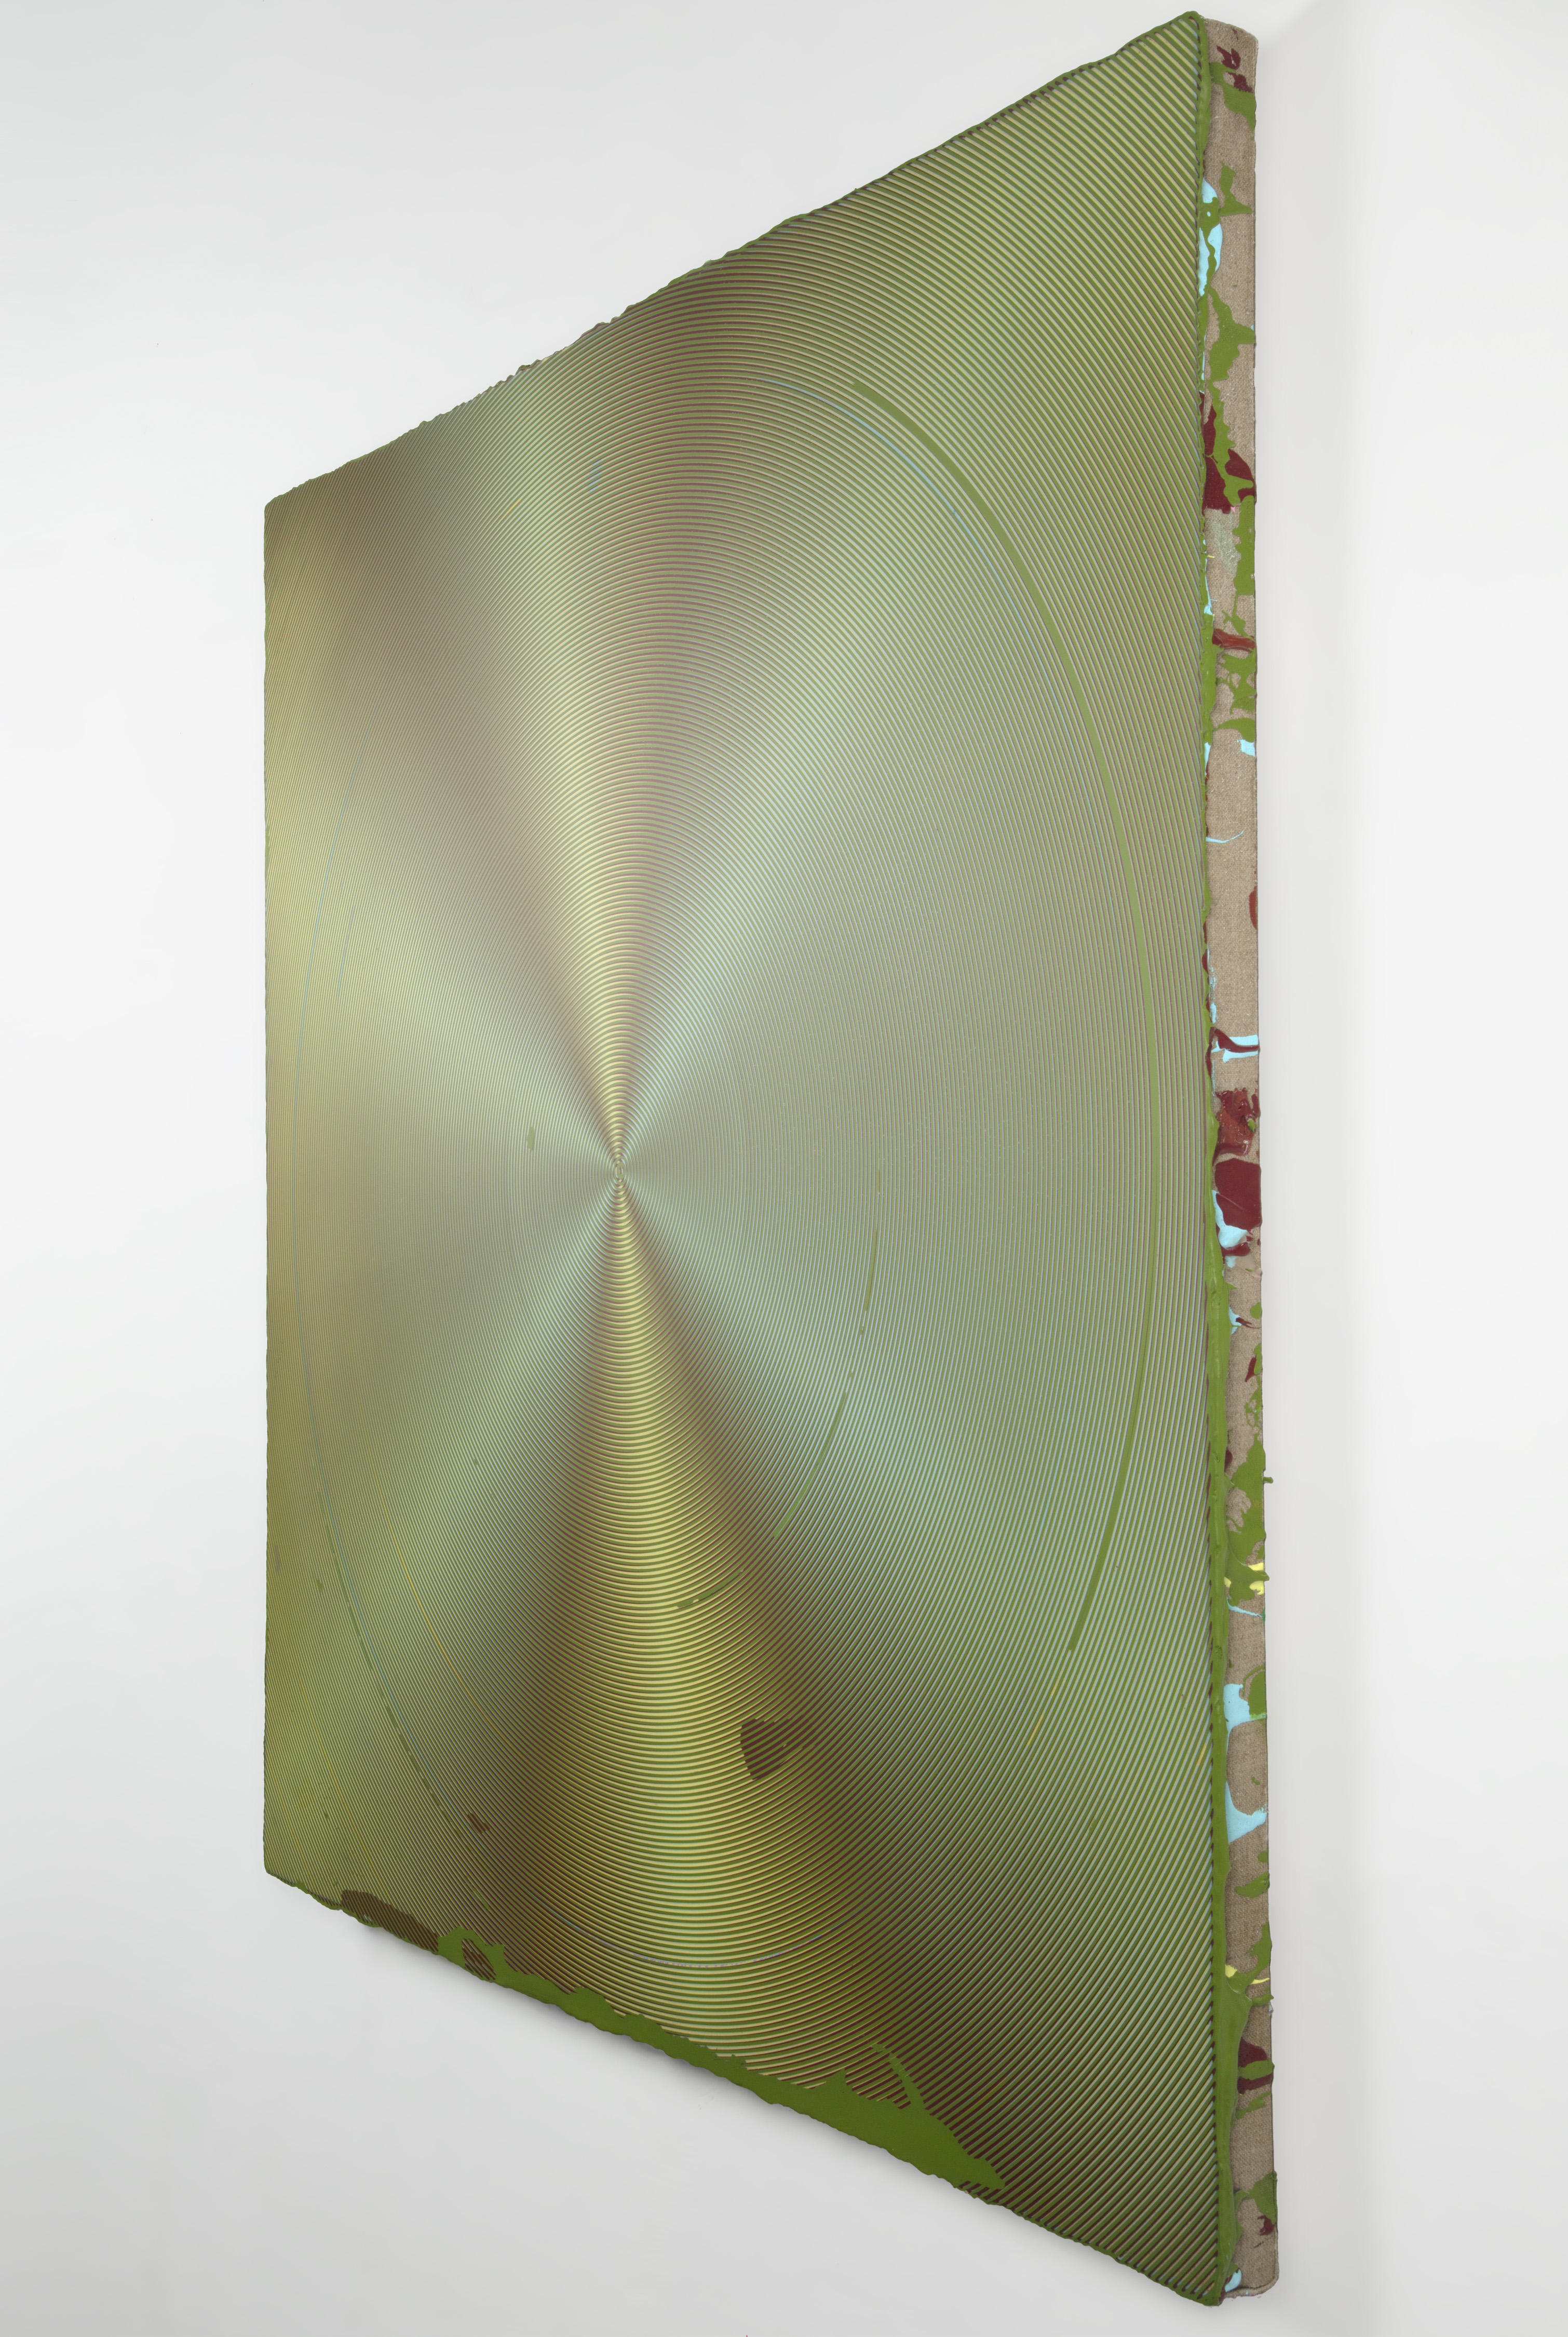 Anoka Faruqee & David Driscoll, 2019P-13(Circle), 2019. Acrílico sobre lino sobre tablero, 114 x 114 cm. AK007